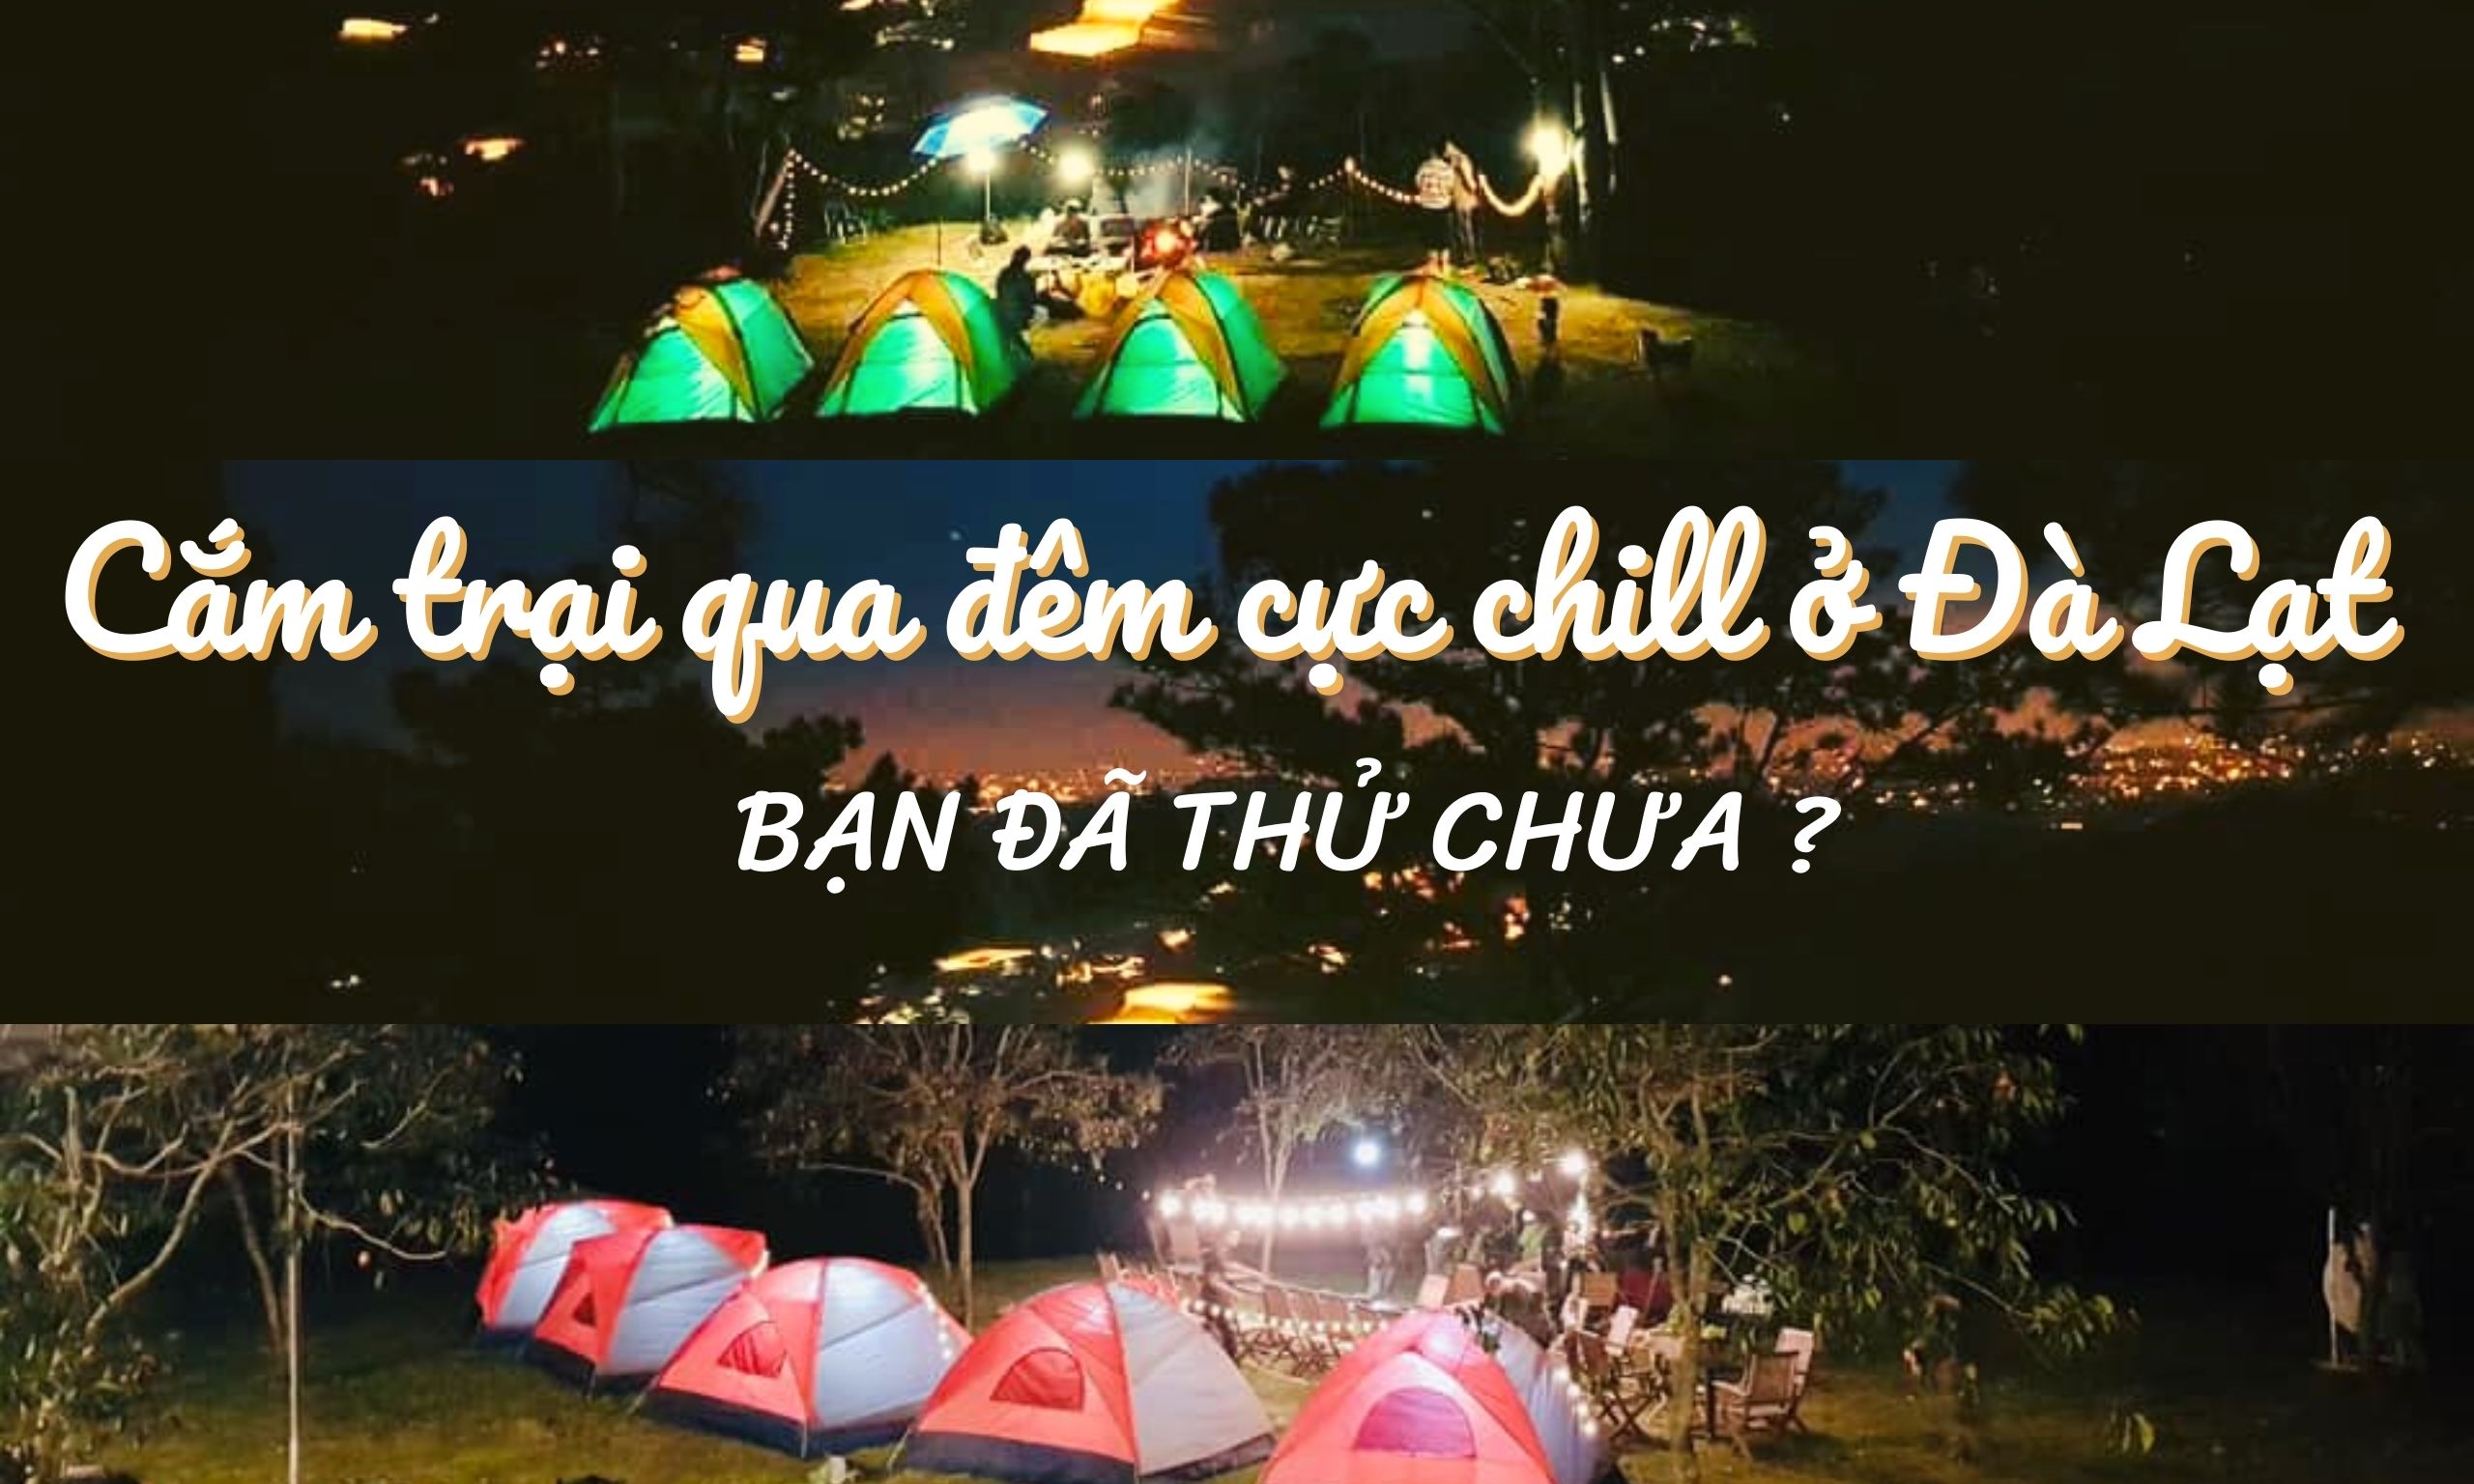 Trải nghiệm cắm trại qua đêm cực chill ở Đà Lạt bạn đã thử chưa?  